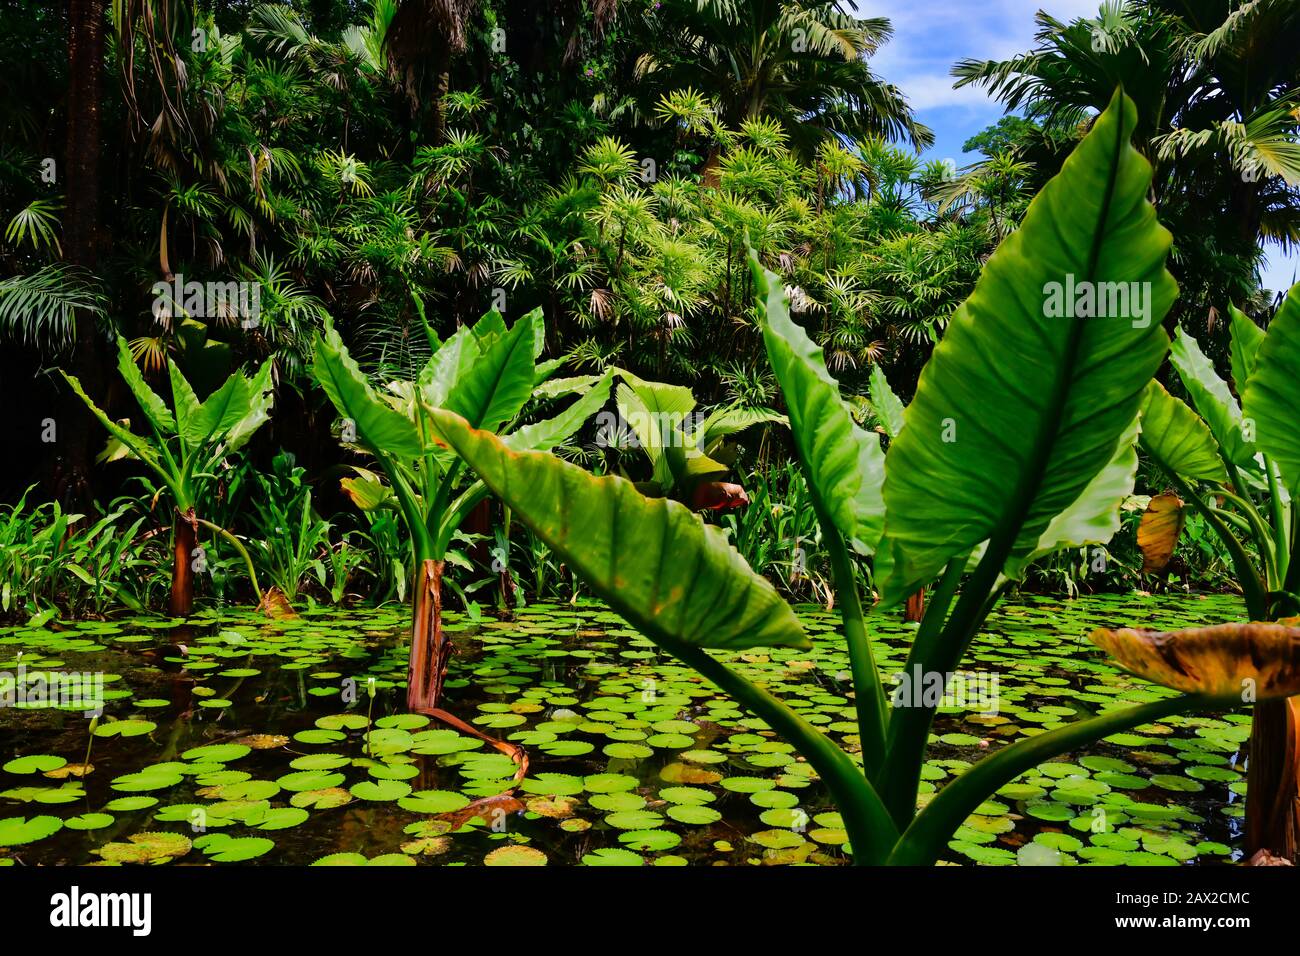 Piante di banana di acqua che crescono in un piccolo stagno insieme con gigli di acqua, albero di palma insolito adattato per vivere in acqua. Seychelles. Foto Stock